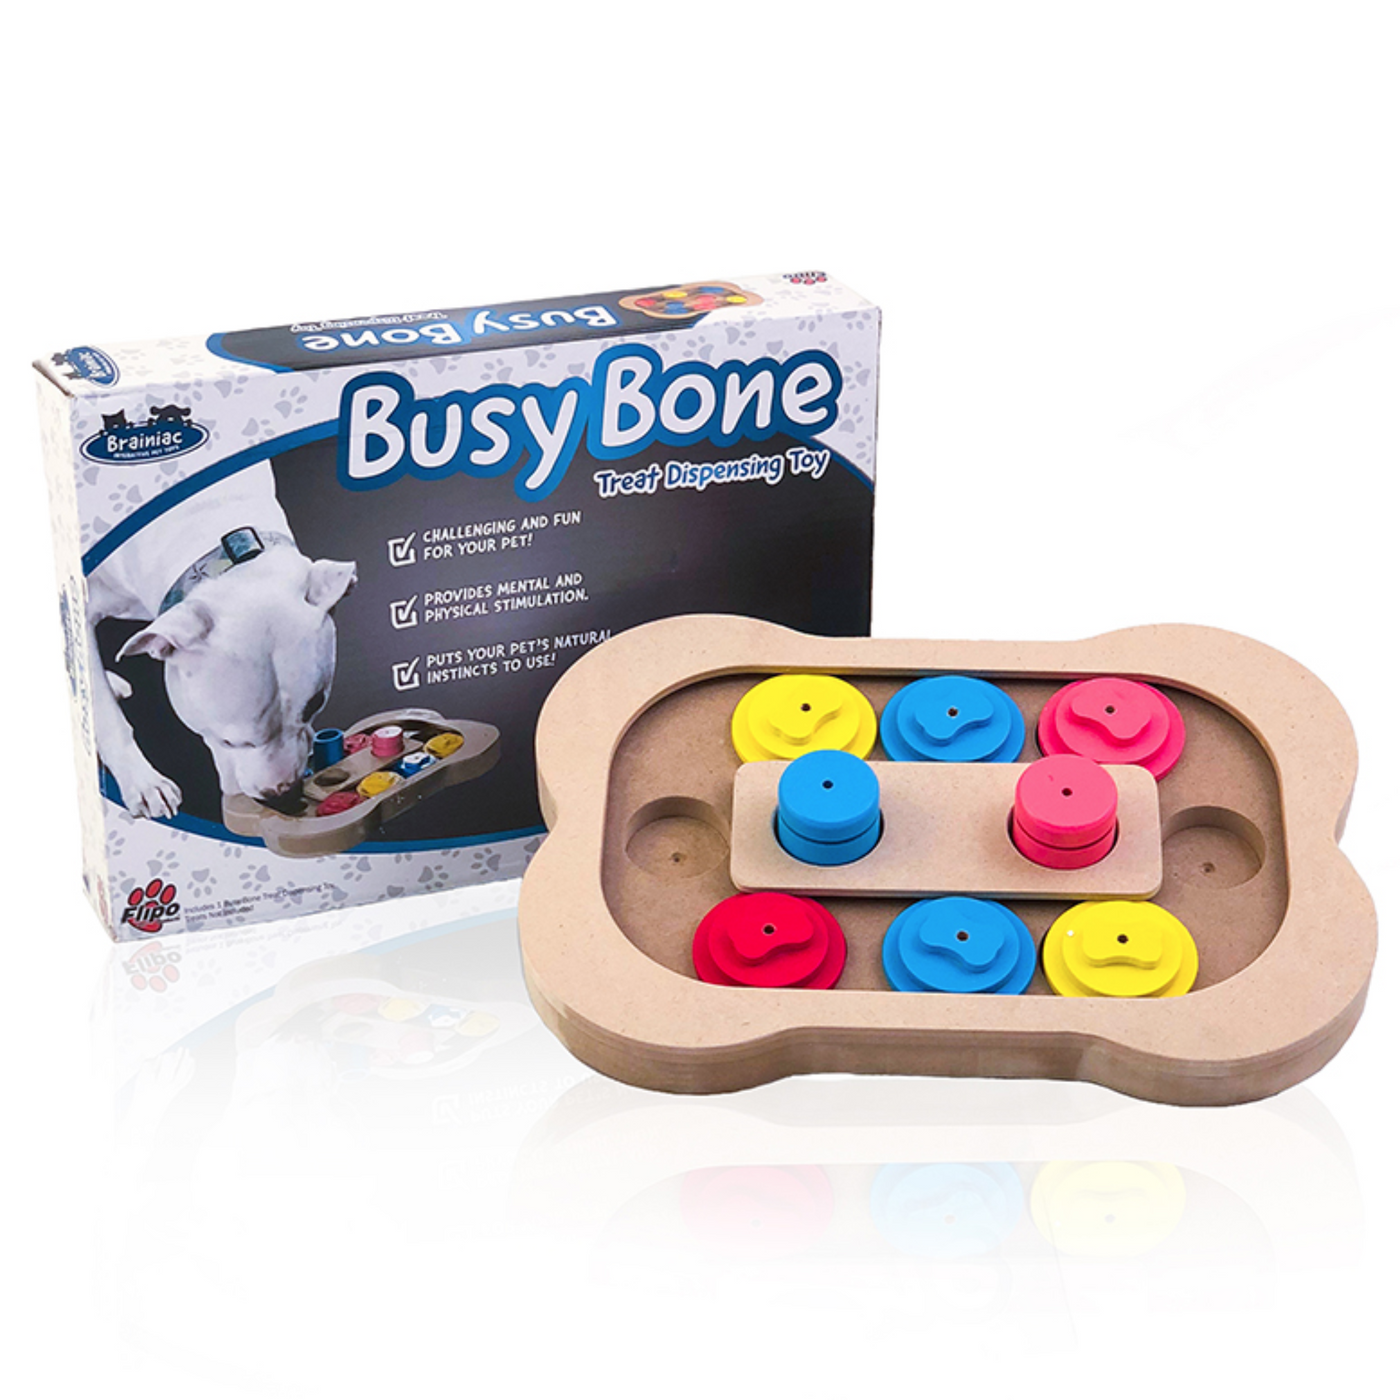 Brainiac Busy Bone Smart Pet Toy